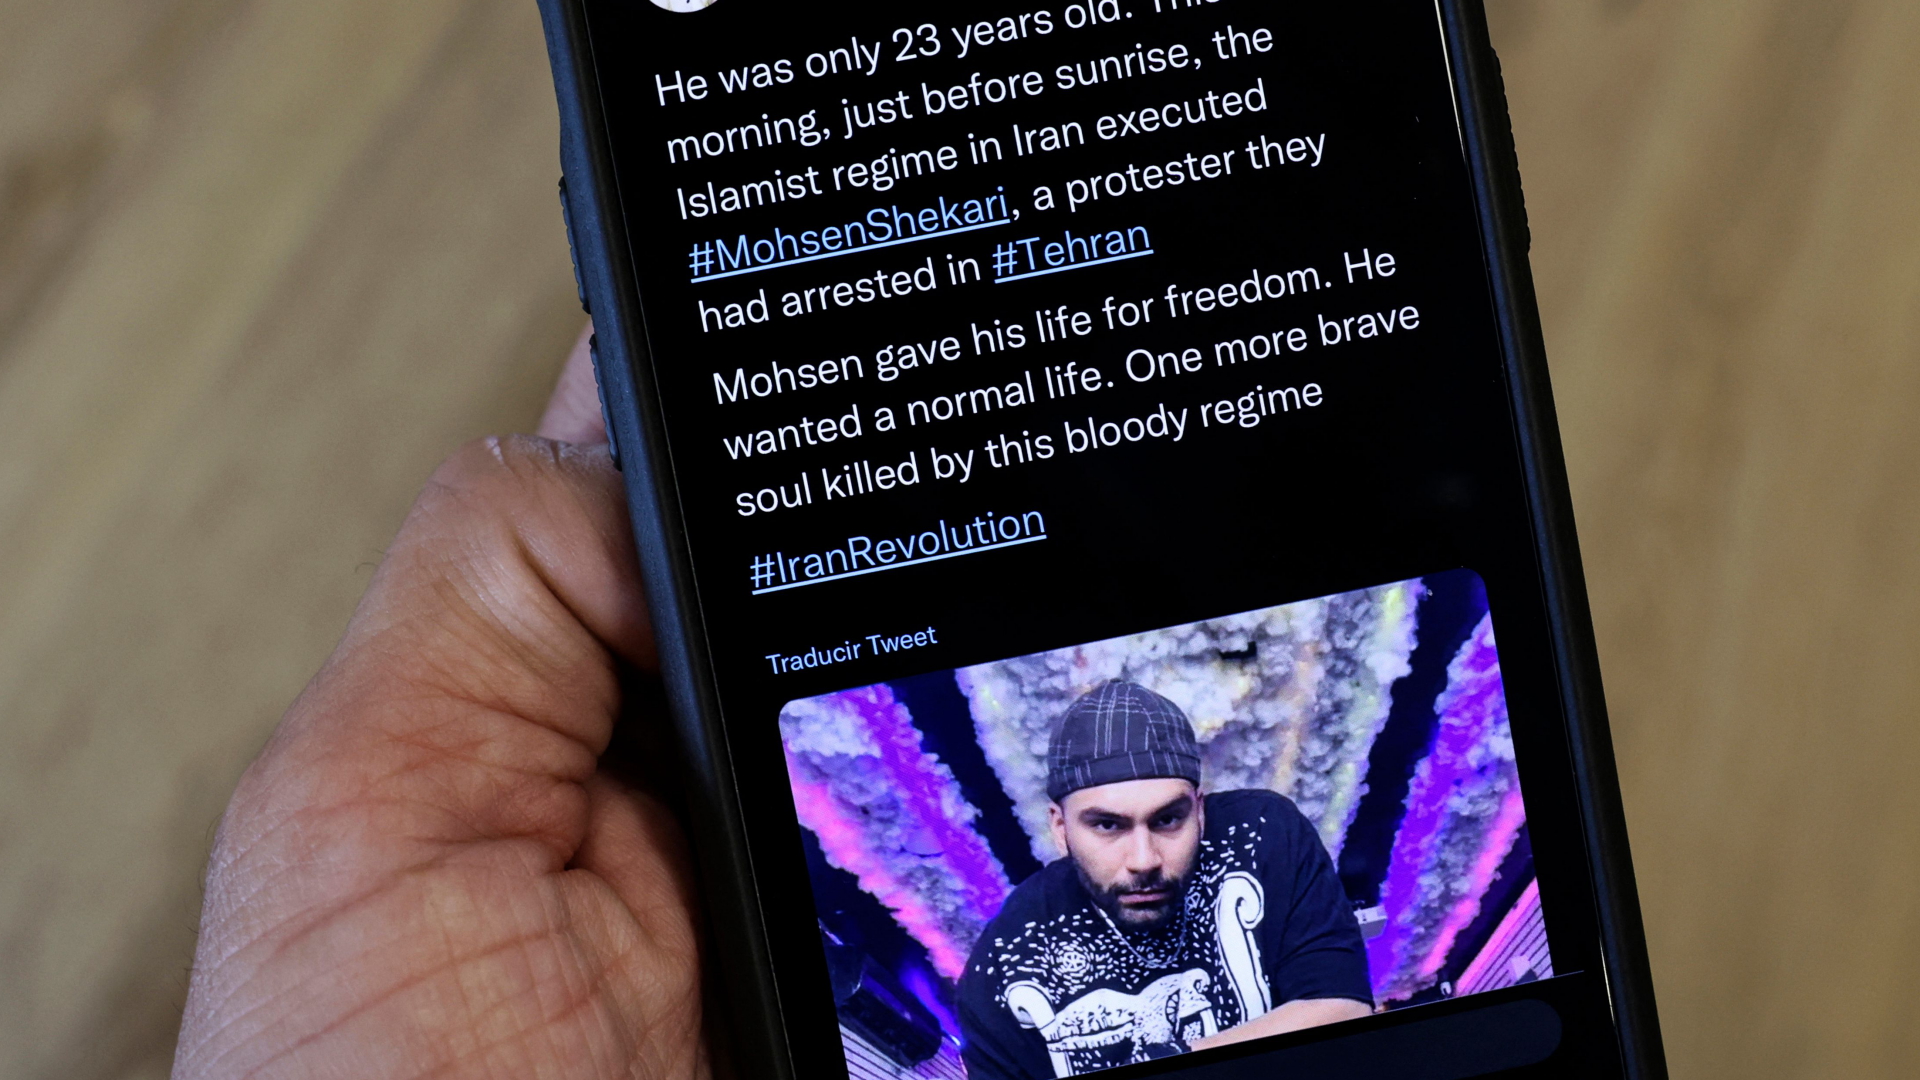 Der hingerichtete iranische Rapper Mohsen Shekari wird in einer Twitter-Nachricht betrauert.